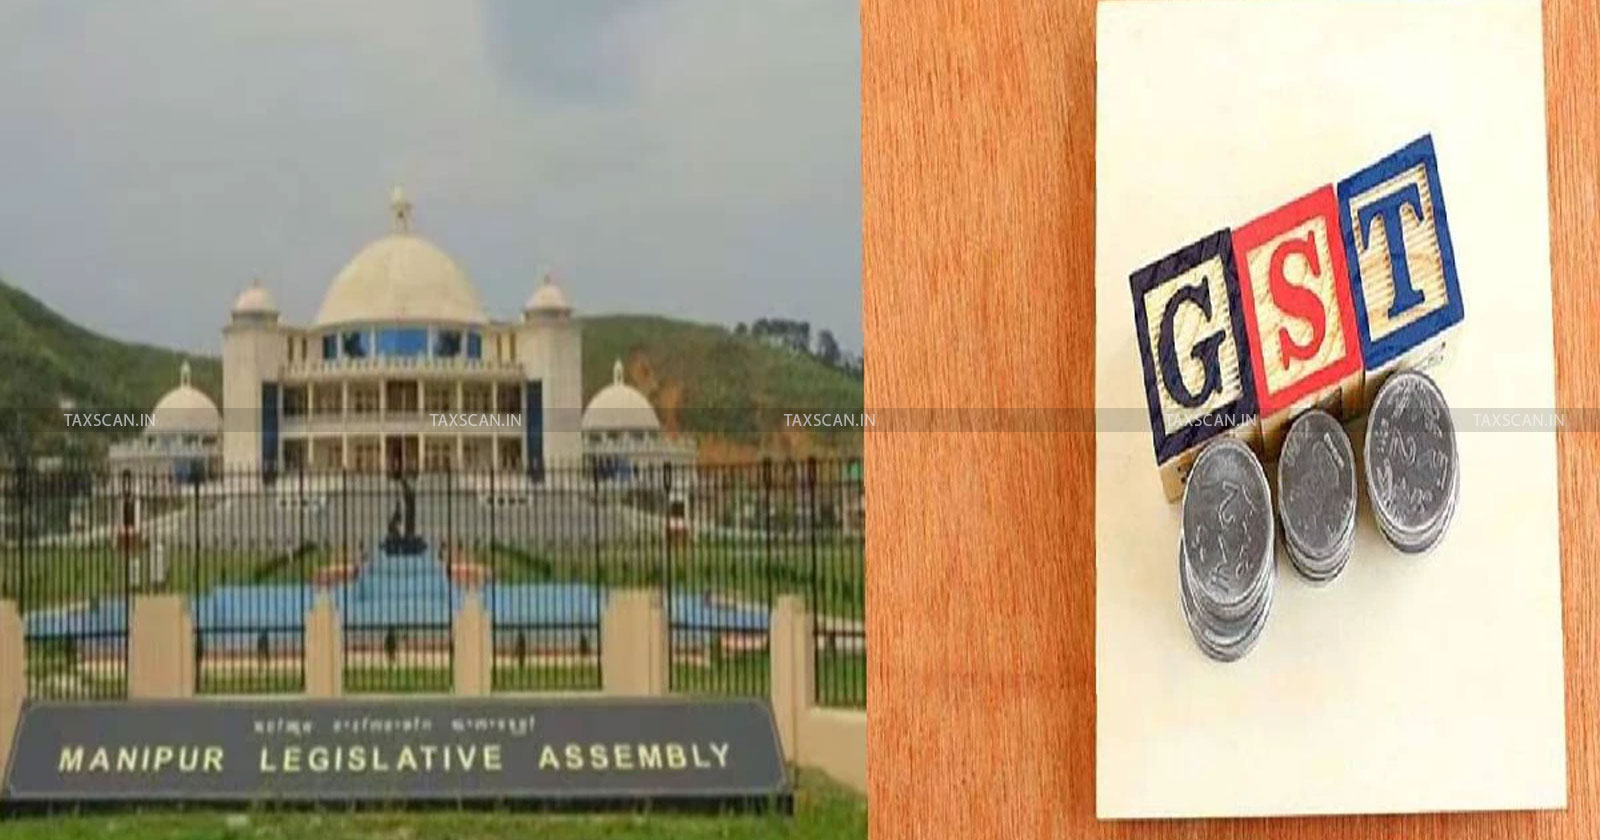 GST - GST Amendment Bill - GST Amendment Bill in Assembly - Manipur government - TAXSCAN